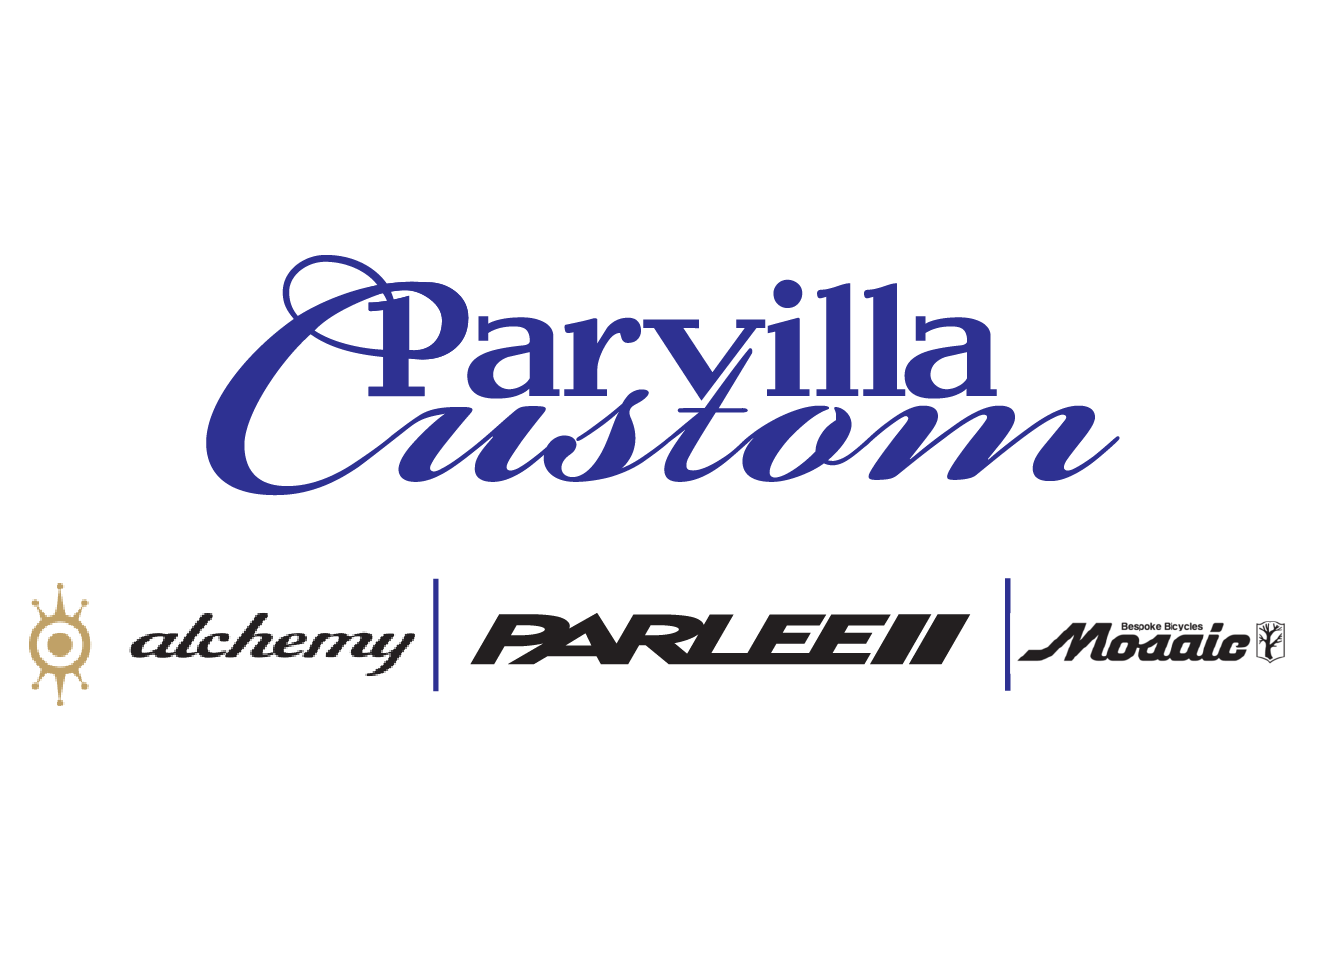 Multisport Logo - Parvilla Cycle & Multisport